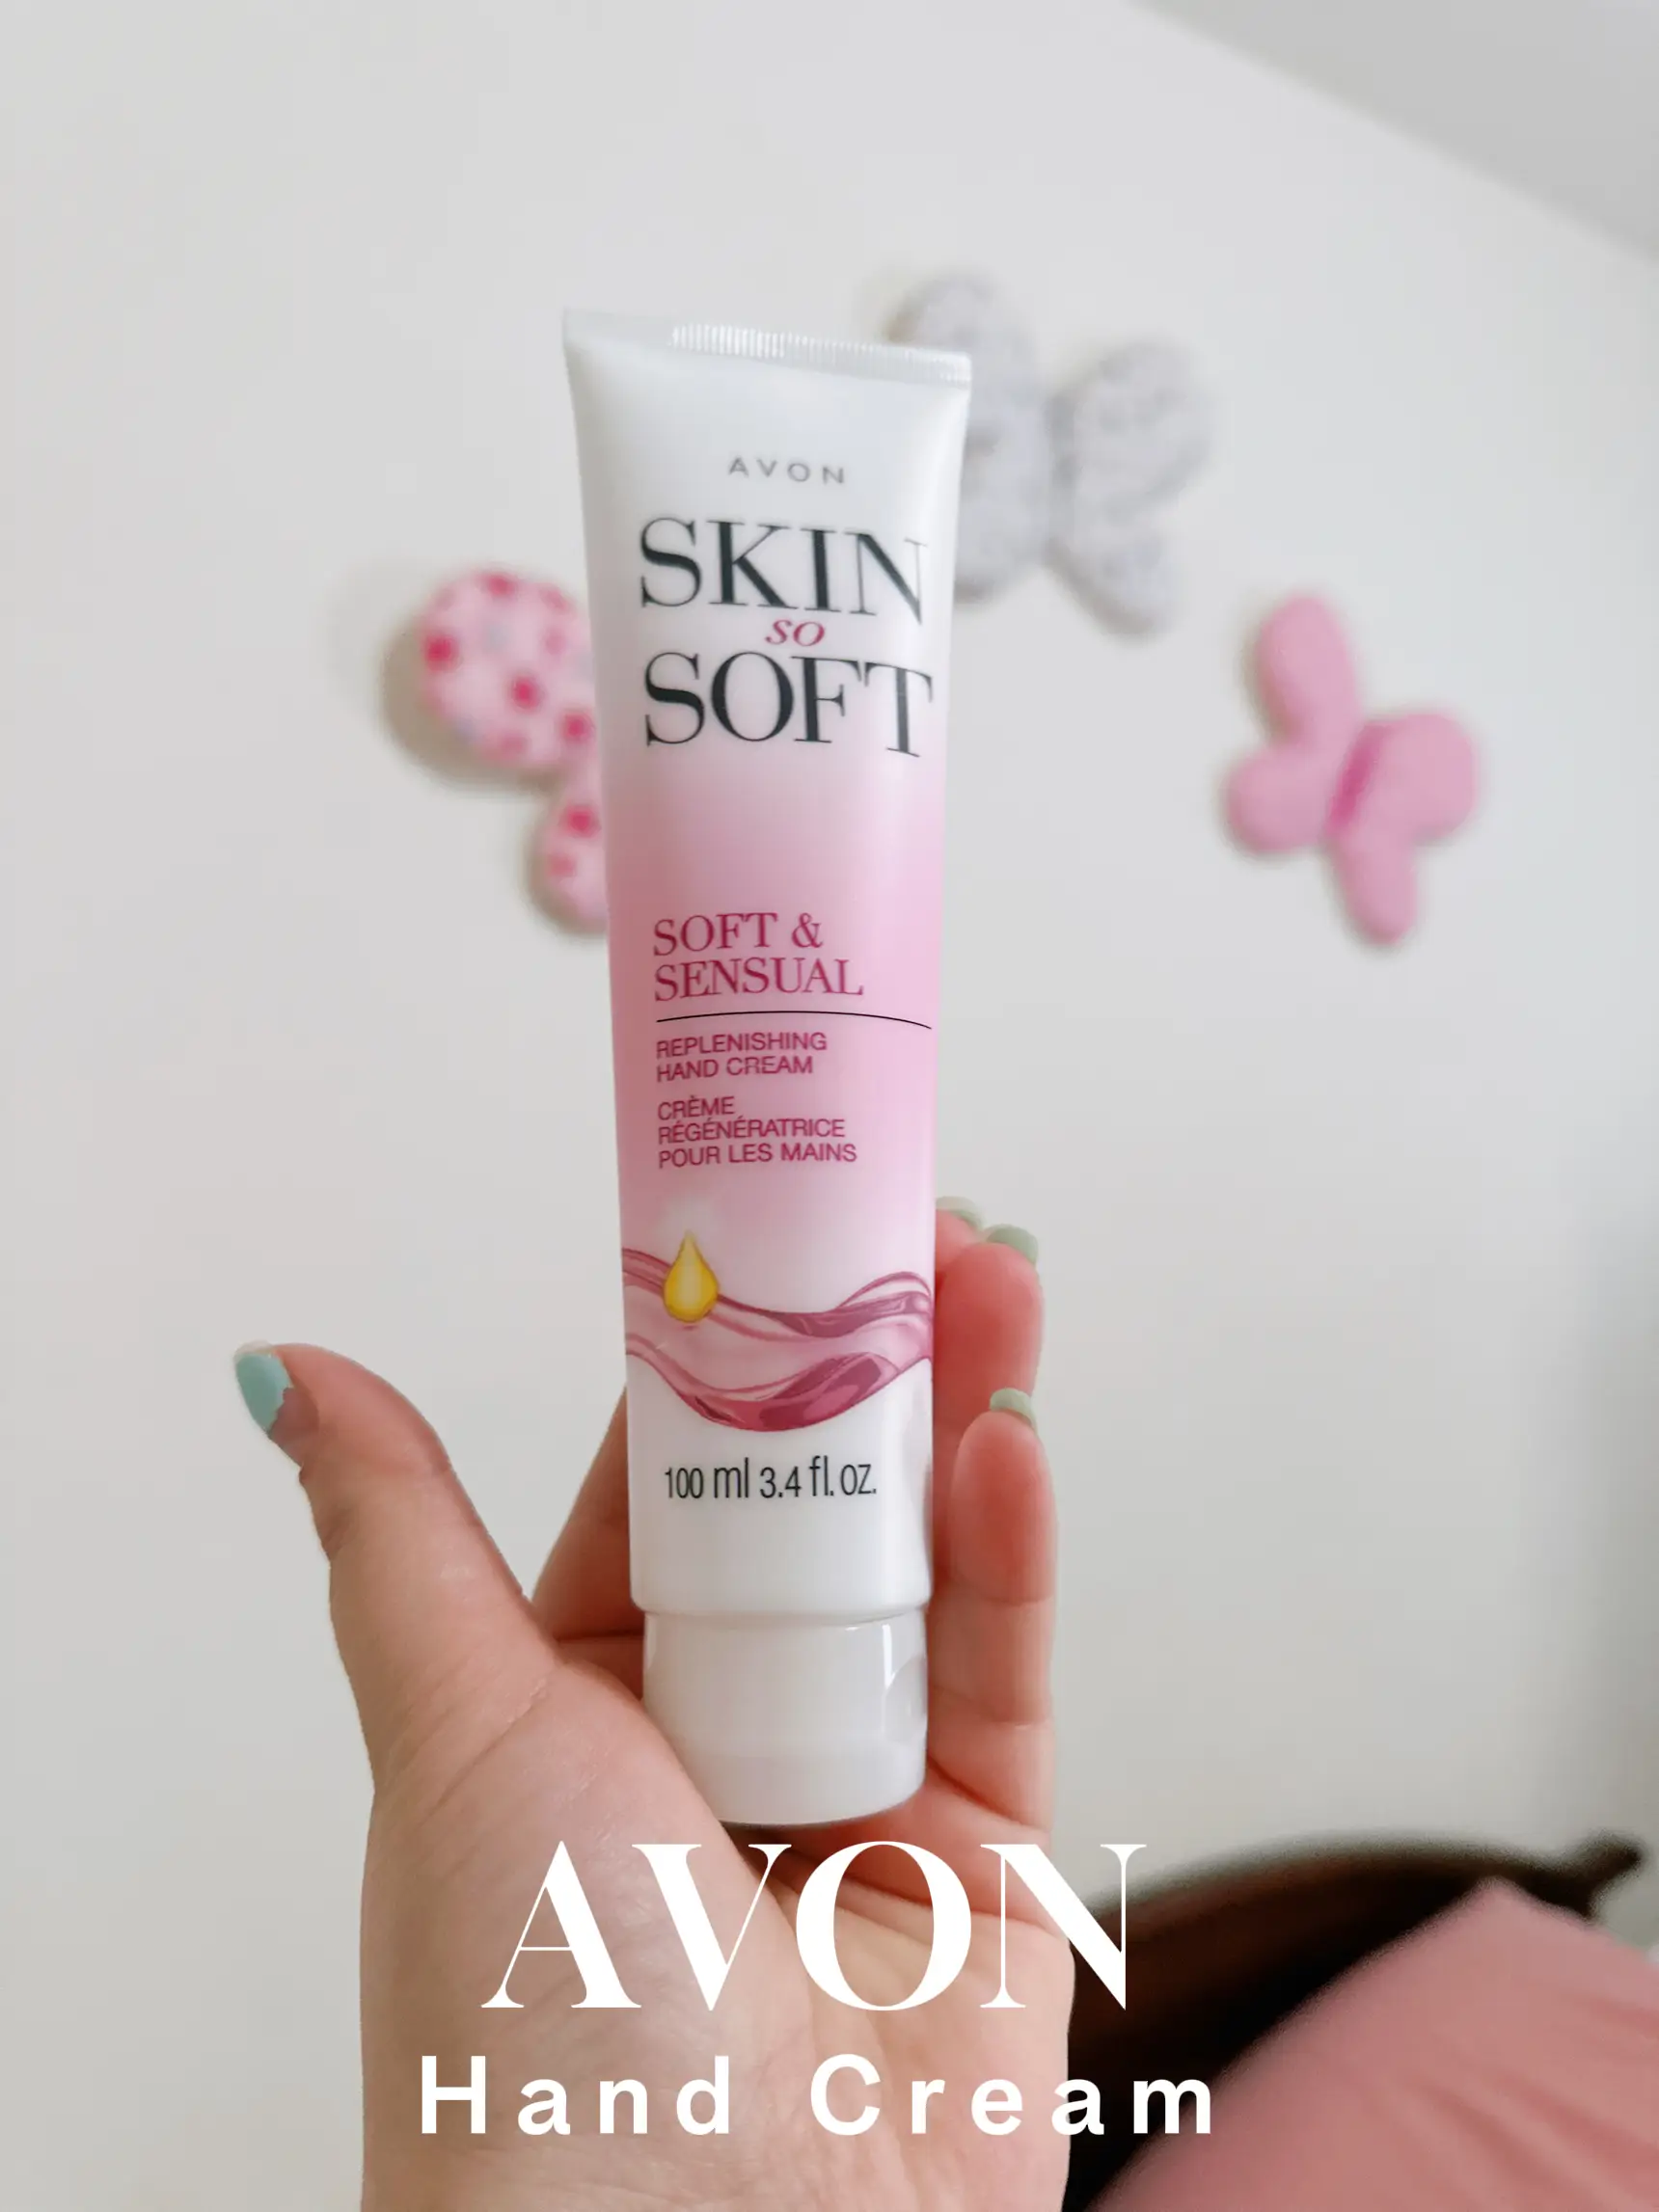 Avon Skin So Soft Soft & Sensual Replenishing Hand Cream 100ml